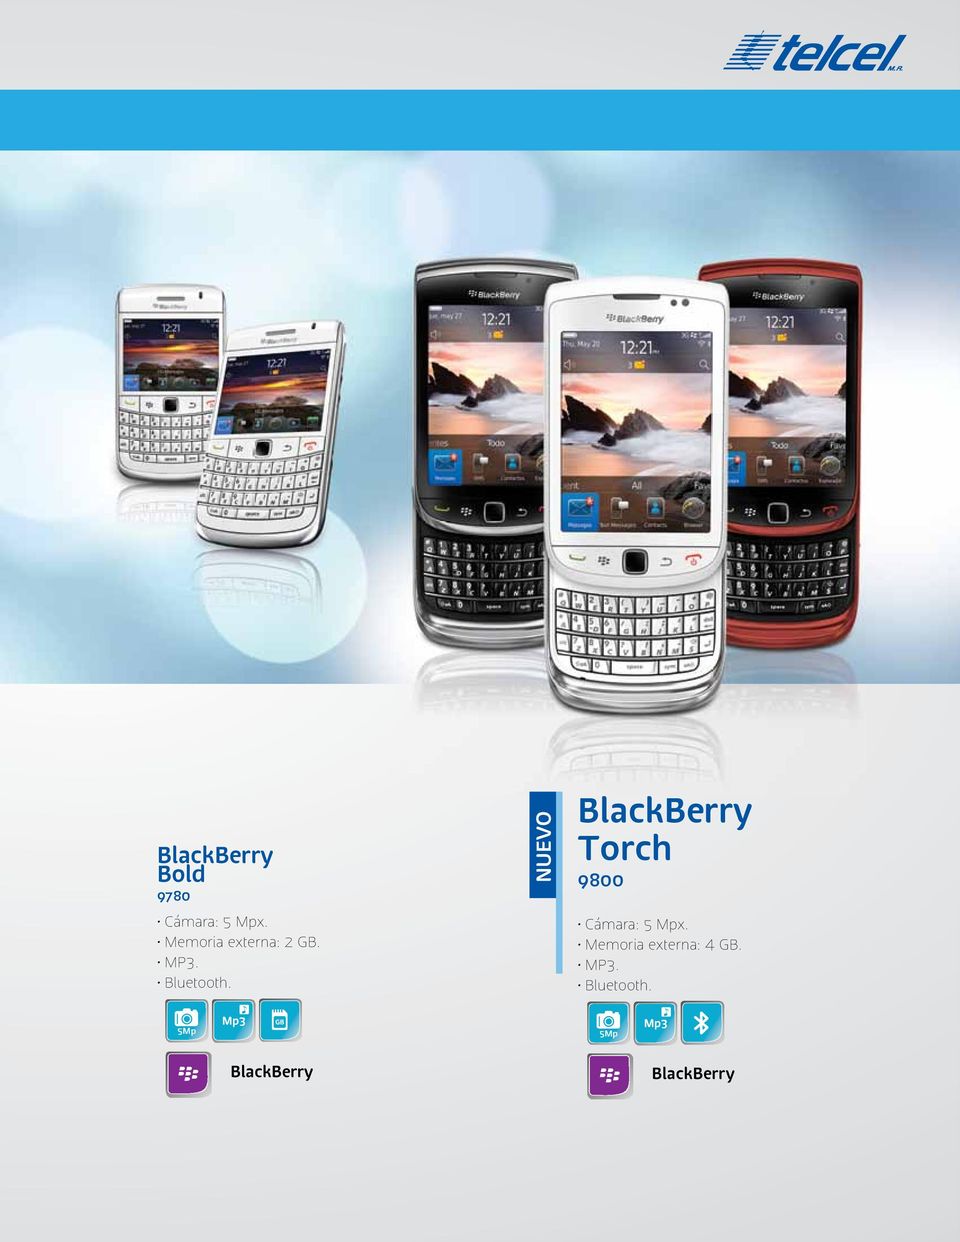 NUEVO BlackBerry Torch 9800 Cámara: 5